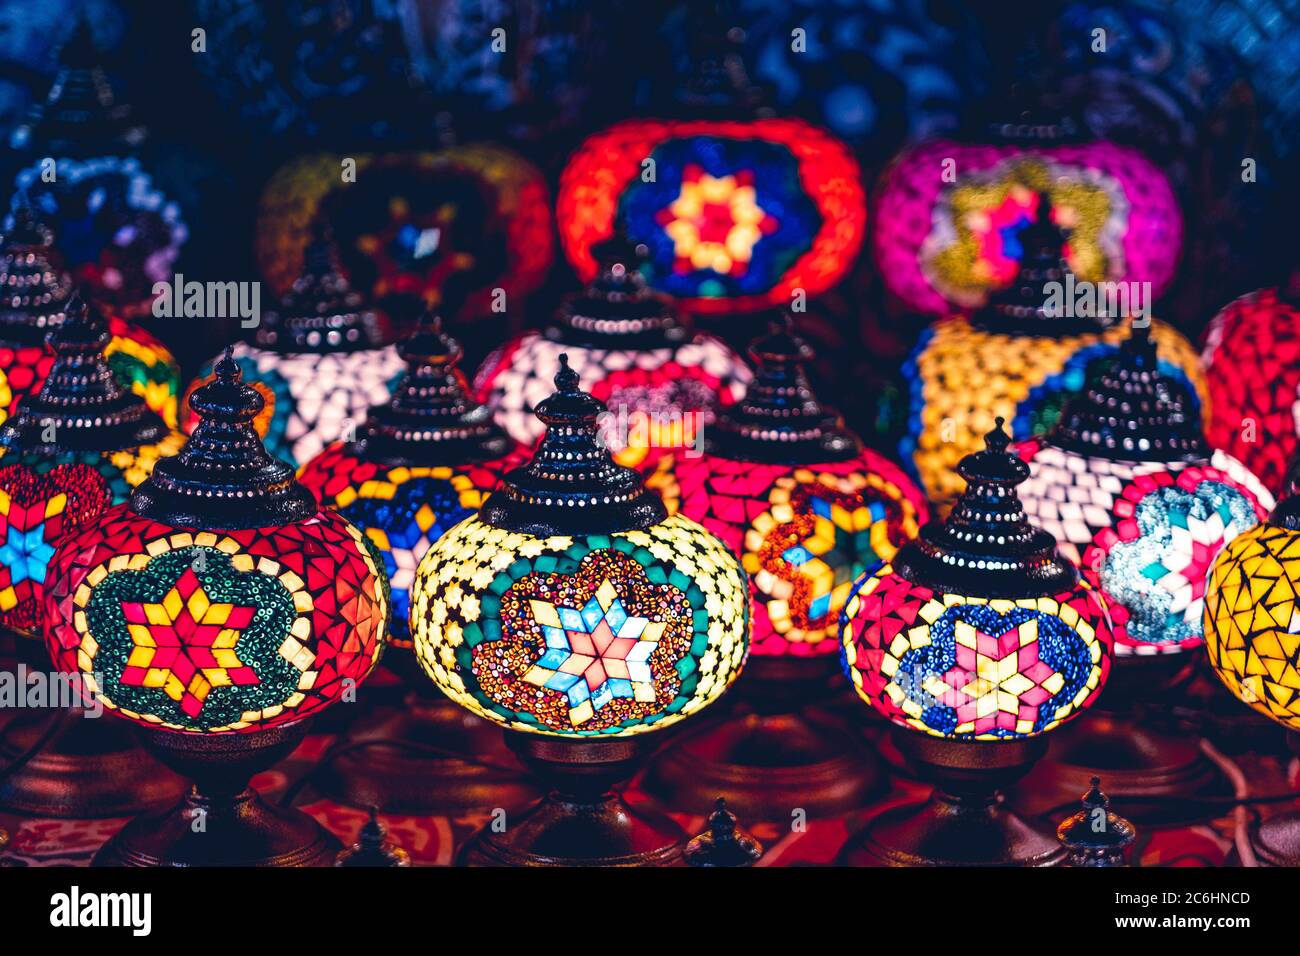 Bella luce soffusa di lampade arabe nel mercato di strada Foto Stock